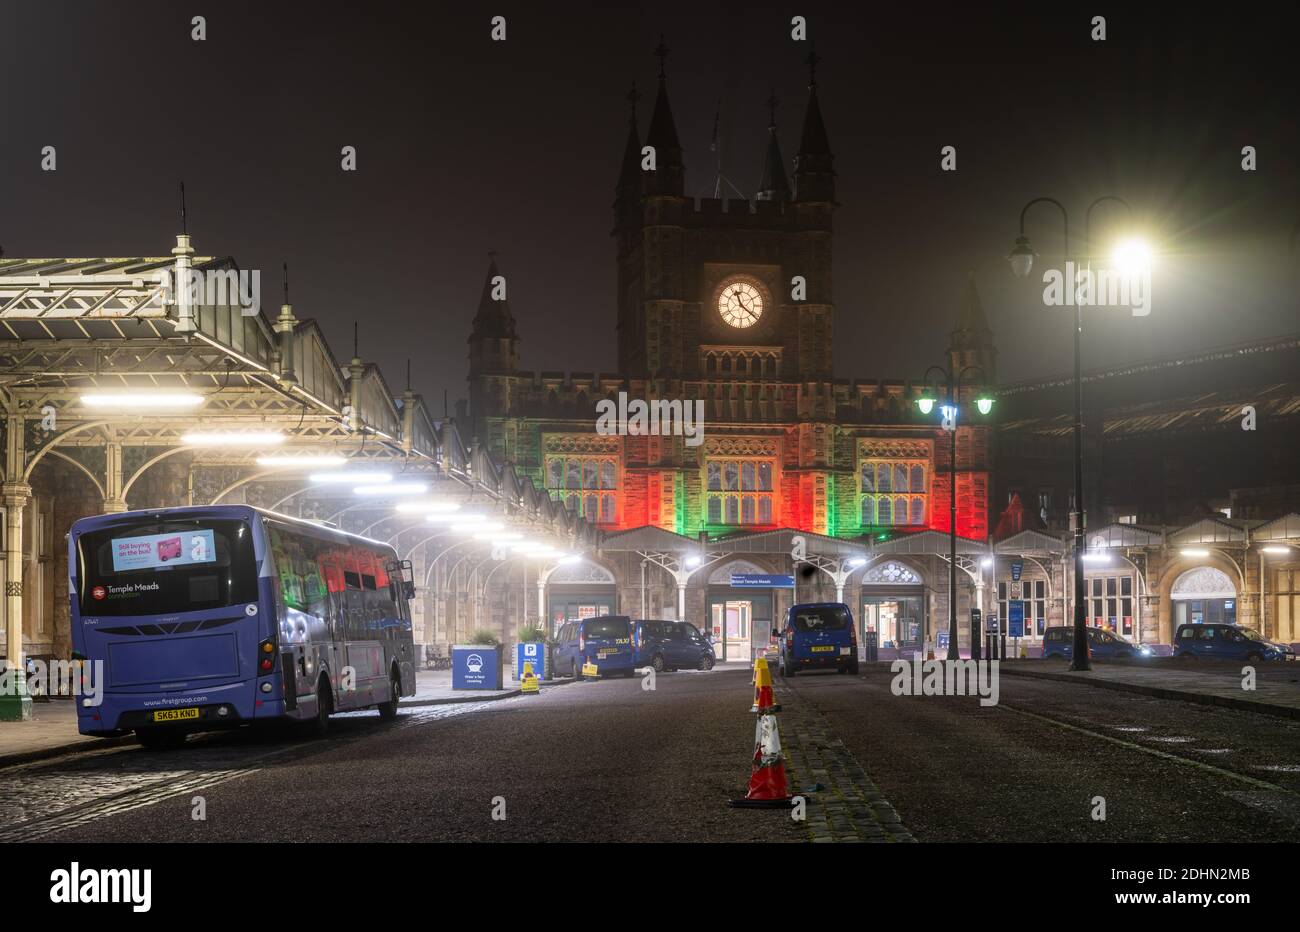 Des taxis et un bus vous attendent devant l'entrée principale de la gare Temple Meads de Bristol, éclairée en rouge la nuit. Banque D'Images